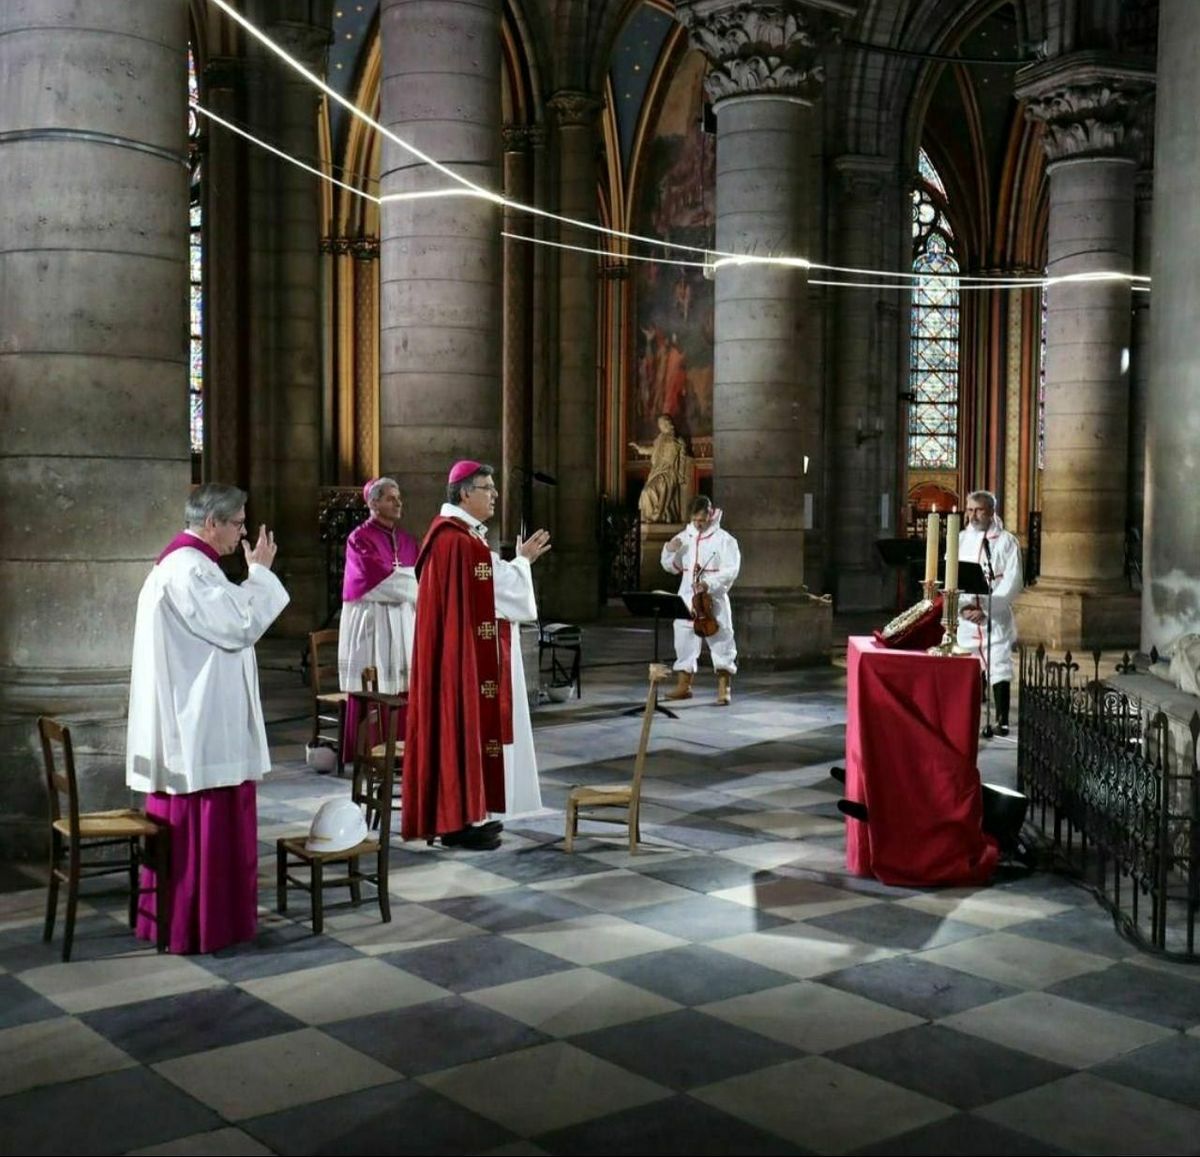 عکس/ مراسم دعا در کلیسای نوتردام توسط اسقف اعظم پاریس